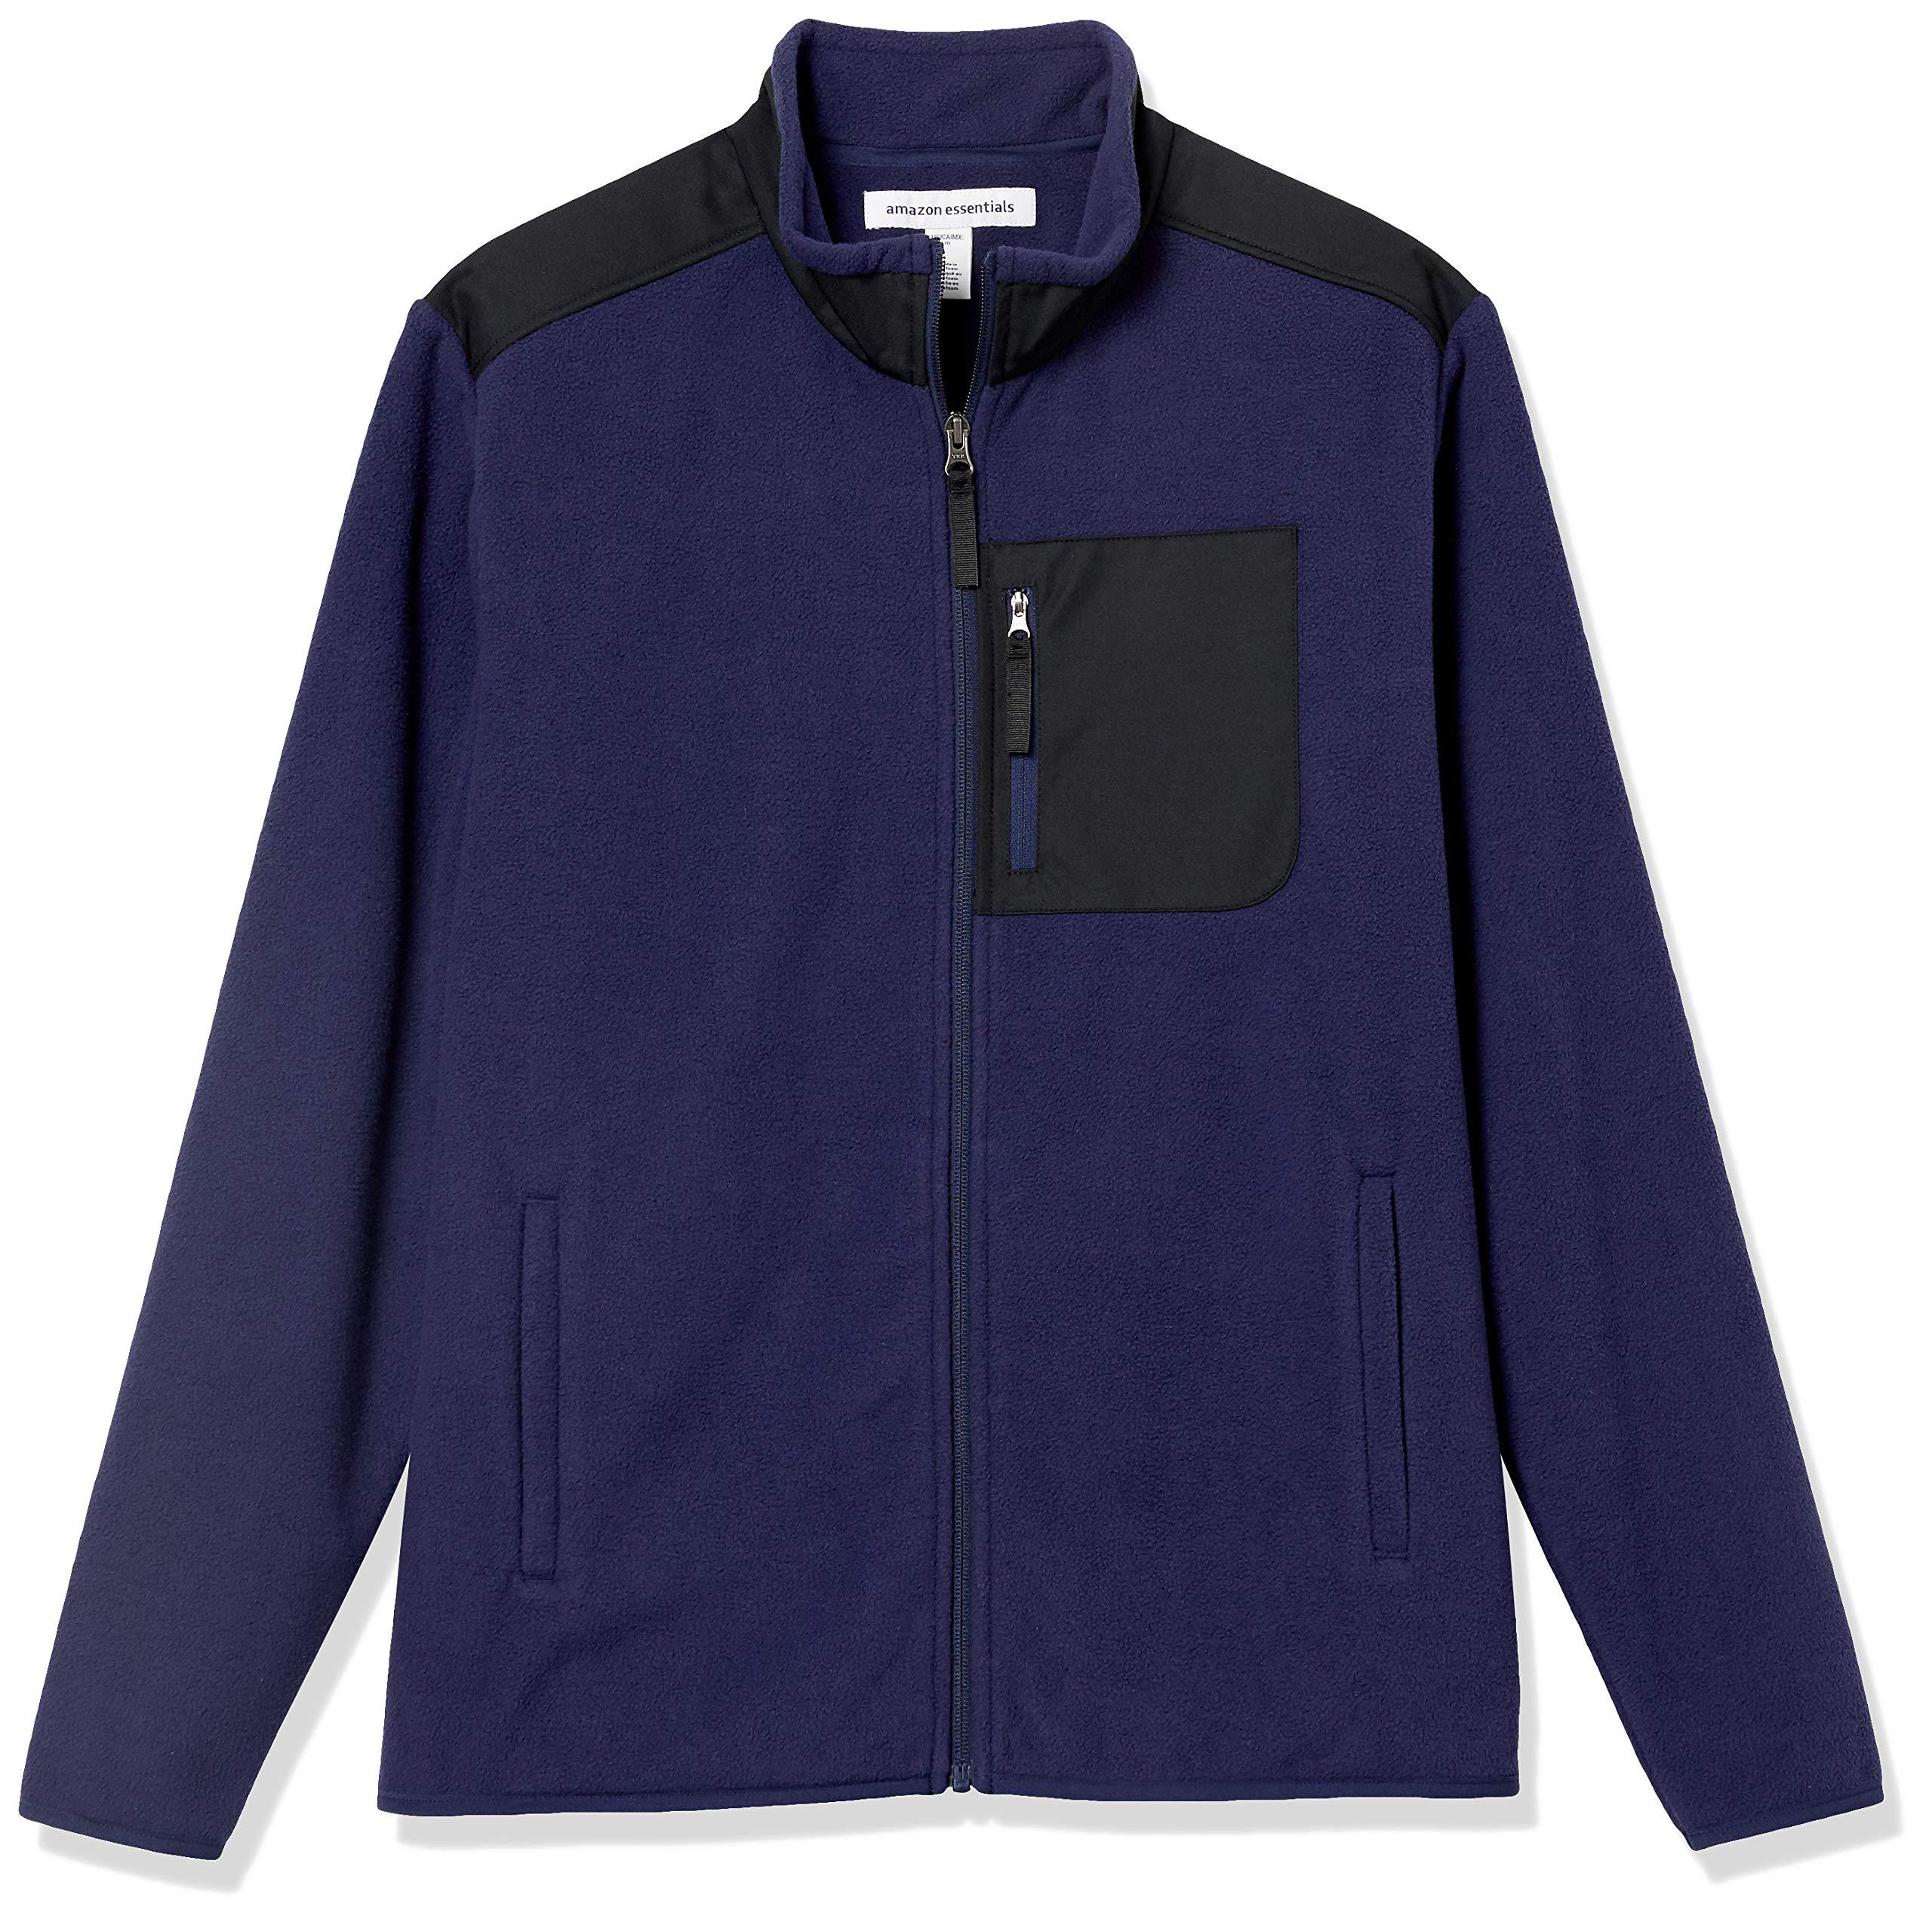 Amazon Essentials Full-zip Polar Fleece Jacket in Blue for Men - Lyst